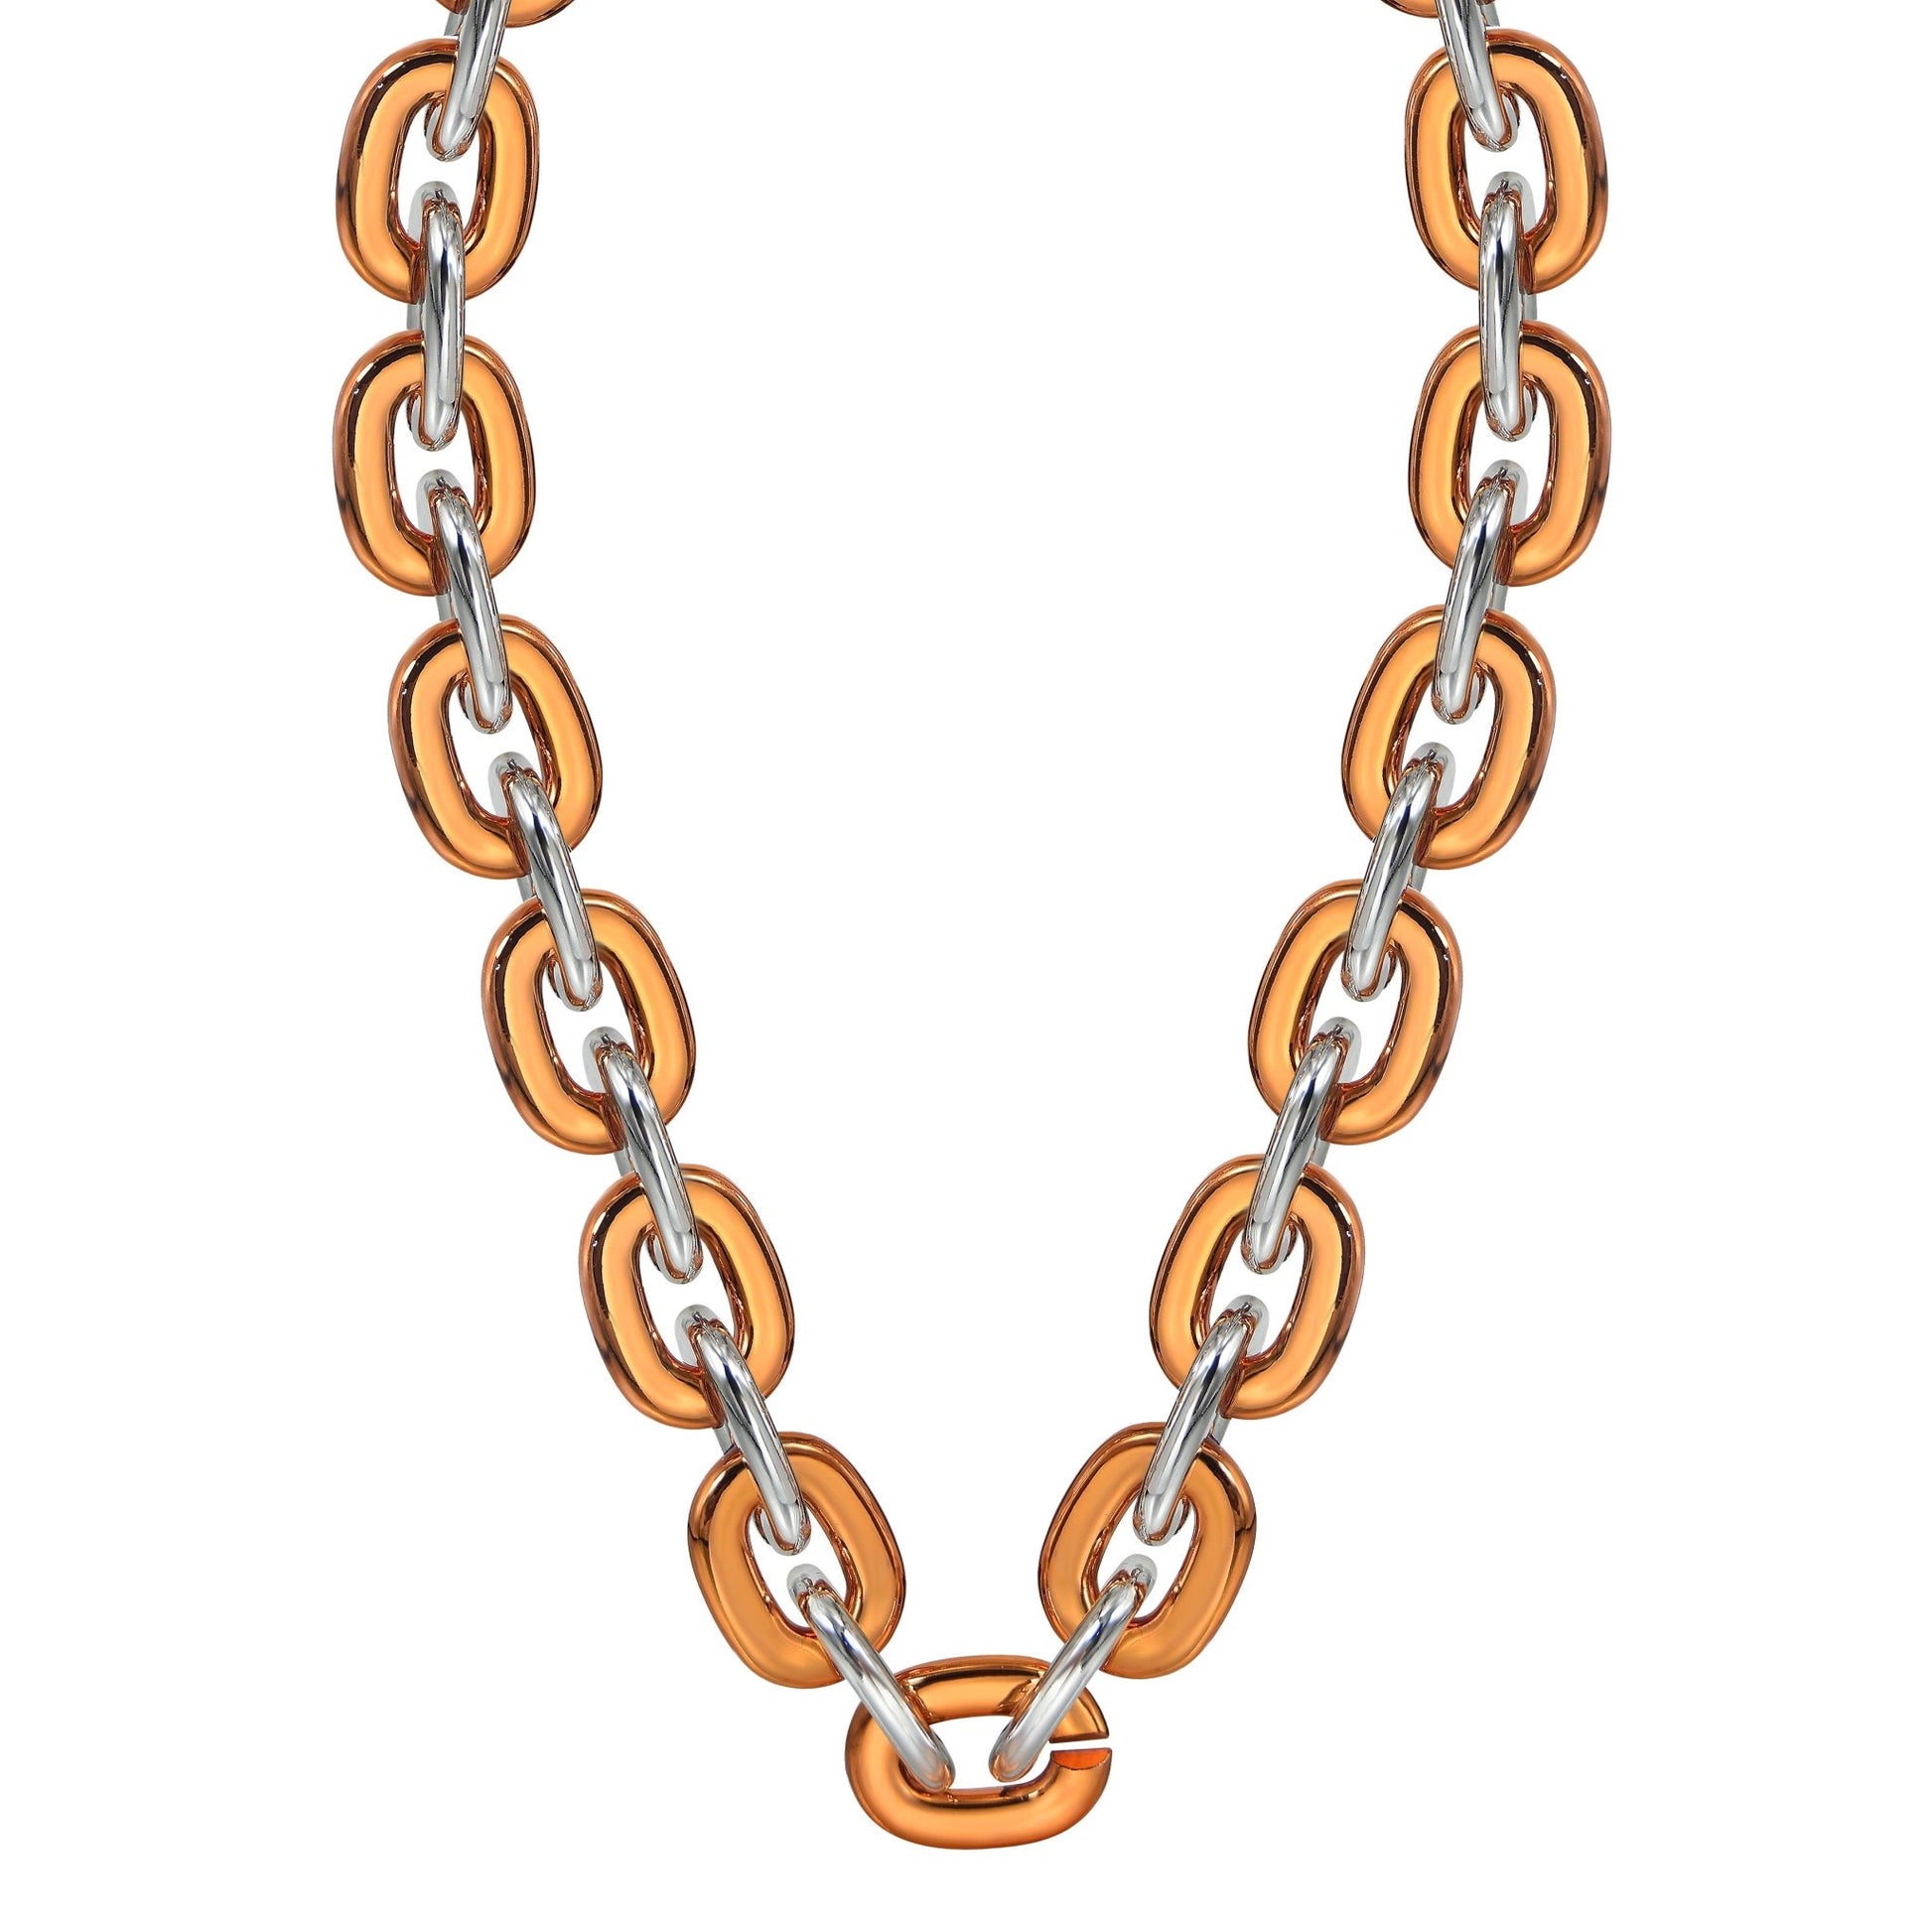 Jumbo Fan Chain Necklace - Gamedays Gear - Orange / Silver